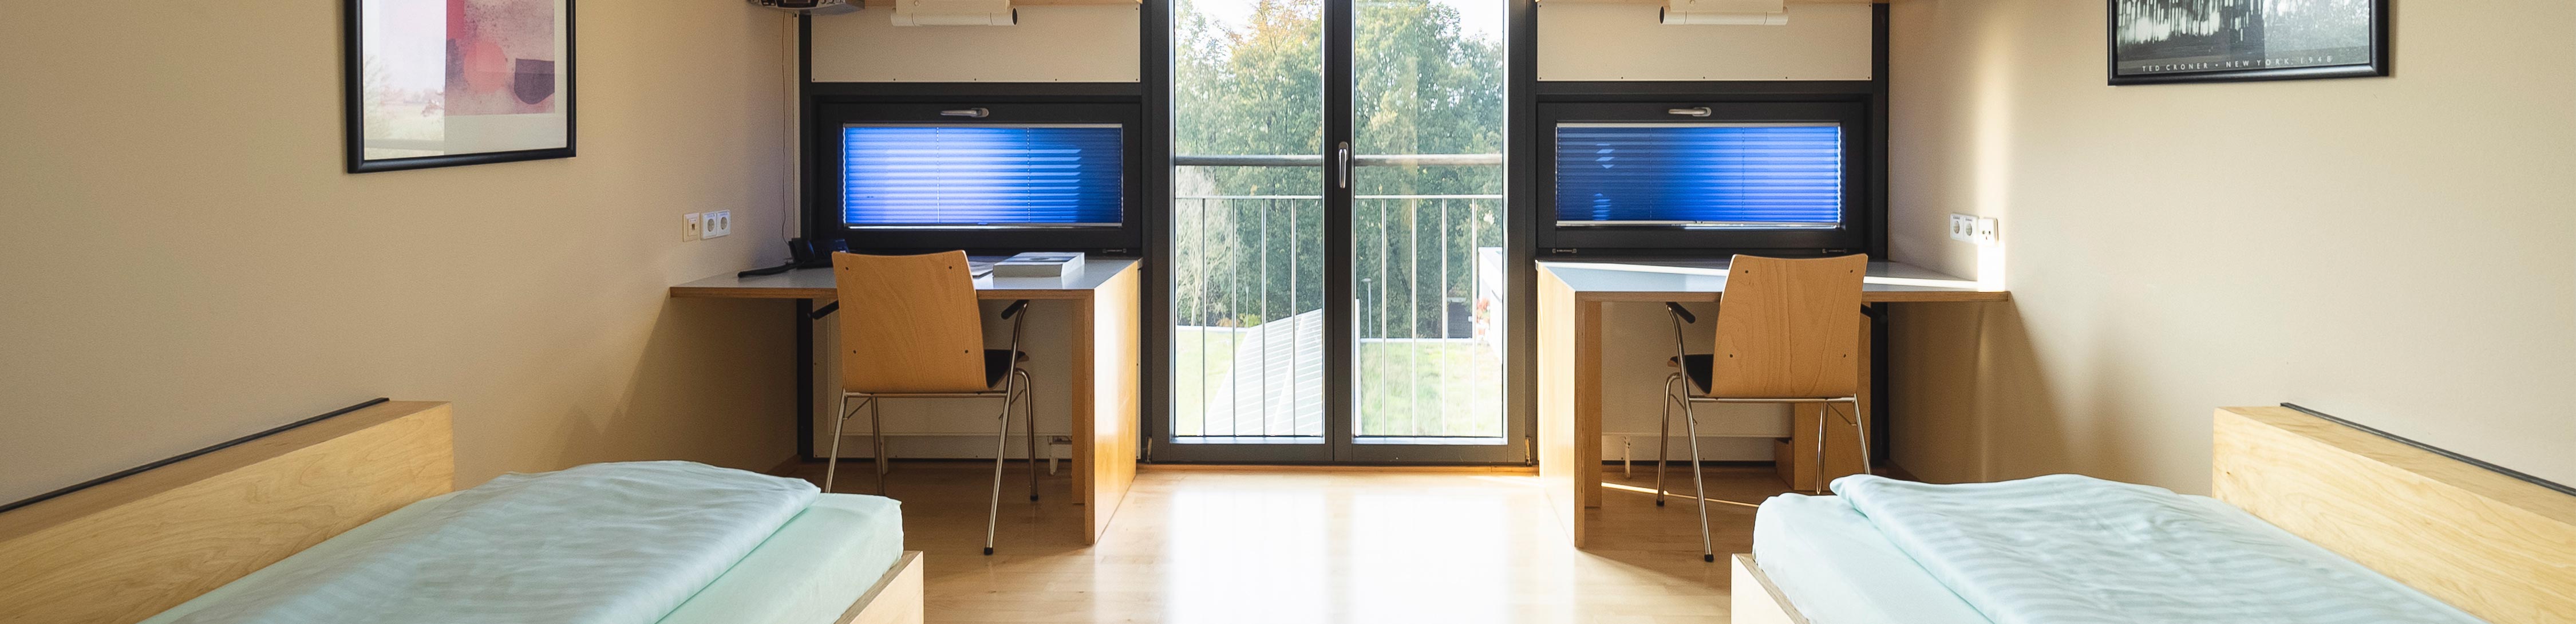 Das Bild ist das Headerbild der Zimmer im BVS-Bildungszentrum in Lauingen. Es zeigt ein Doppelzimmer von innen, das jeweils links und rechts spiegelverkehrt ein Bett und dahinter einen Tisch mit einem Stuhl stehen haben.